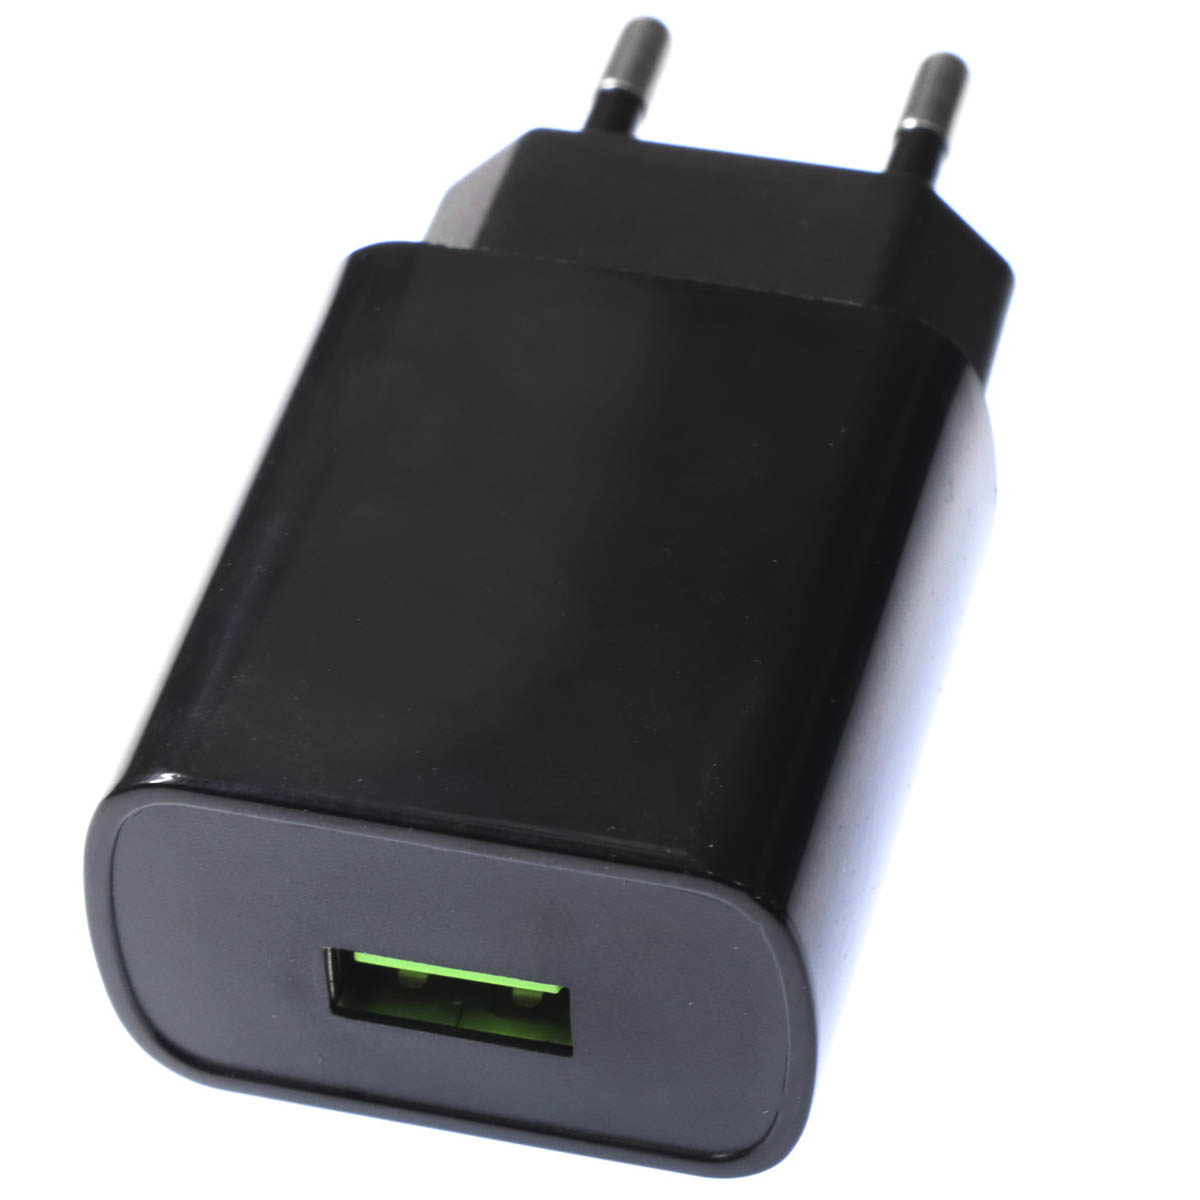 СЗУ (Сетевое зарядное устройство) MRM MR79C, 2.1A, 1 USB, цвет черный